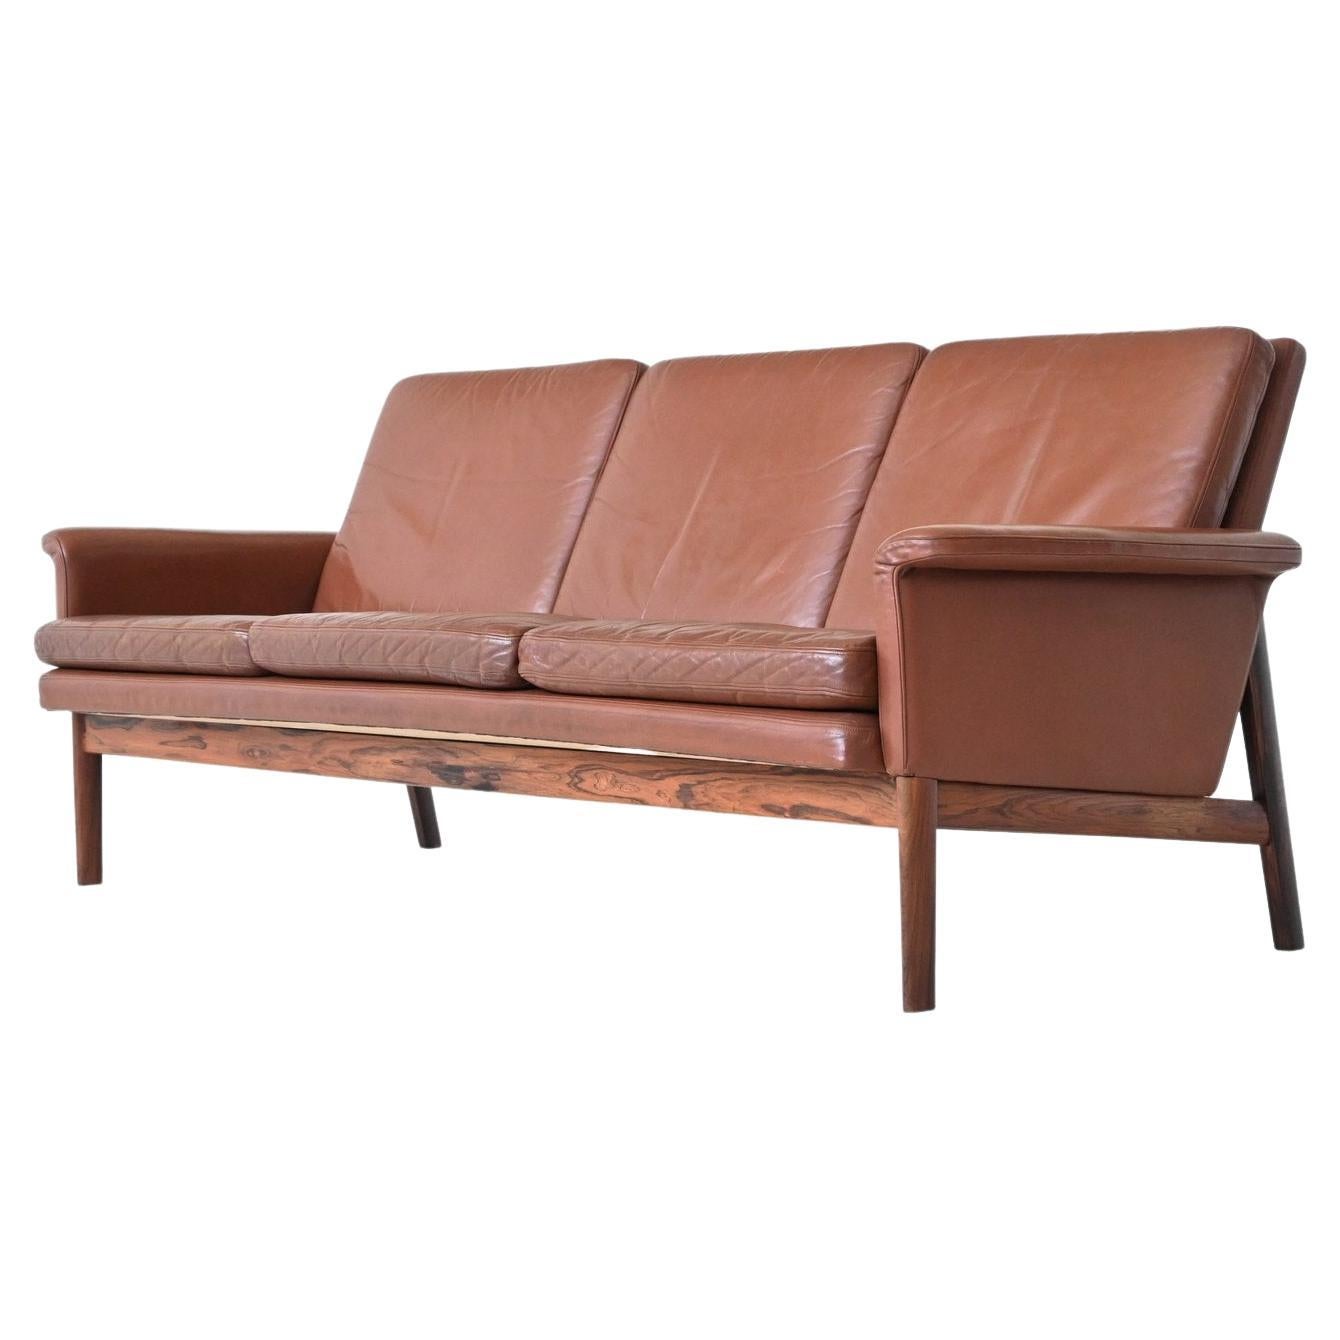 Finn Juhl Jupiter sofa brown leather France & Son Denmark 1965 For Sale